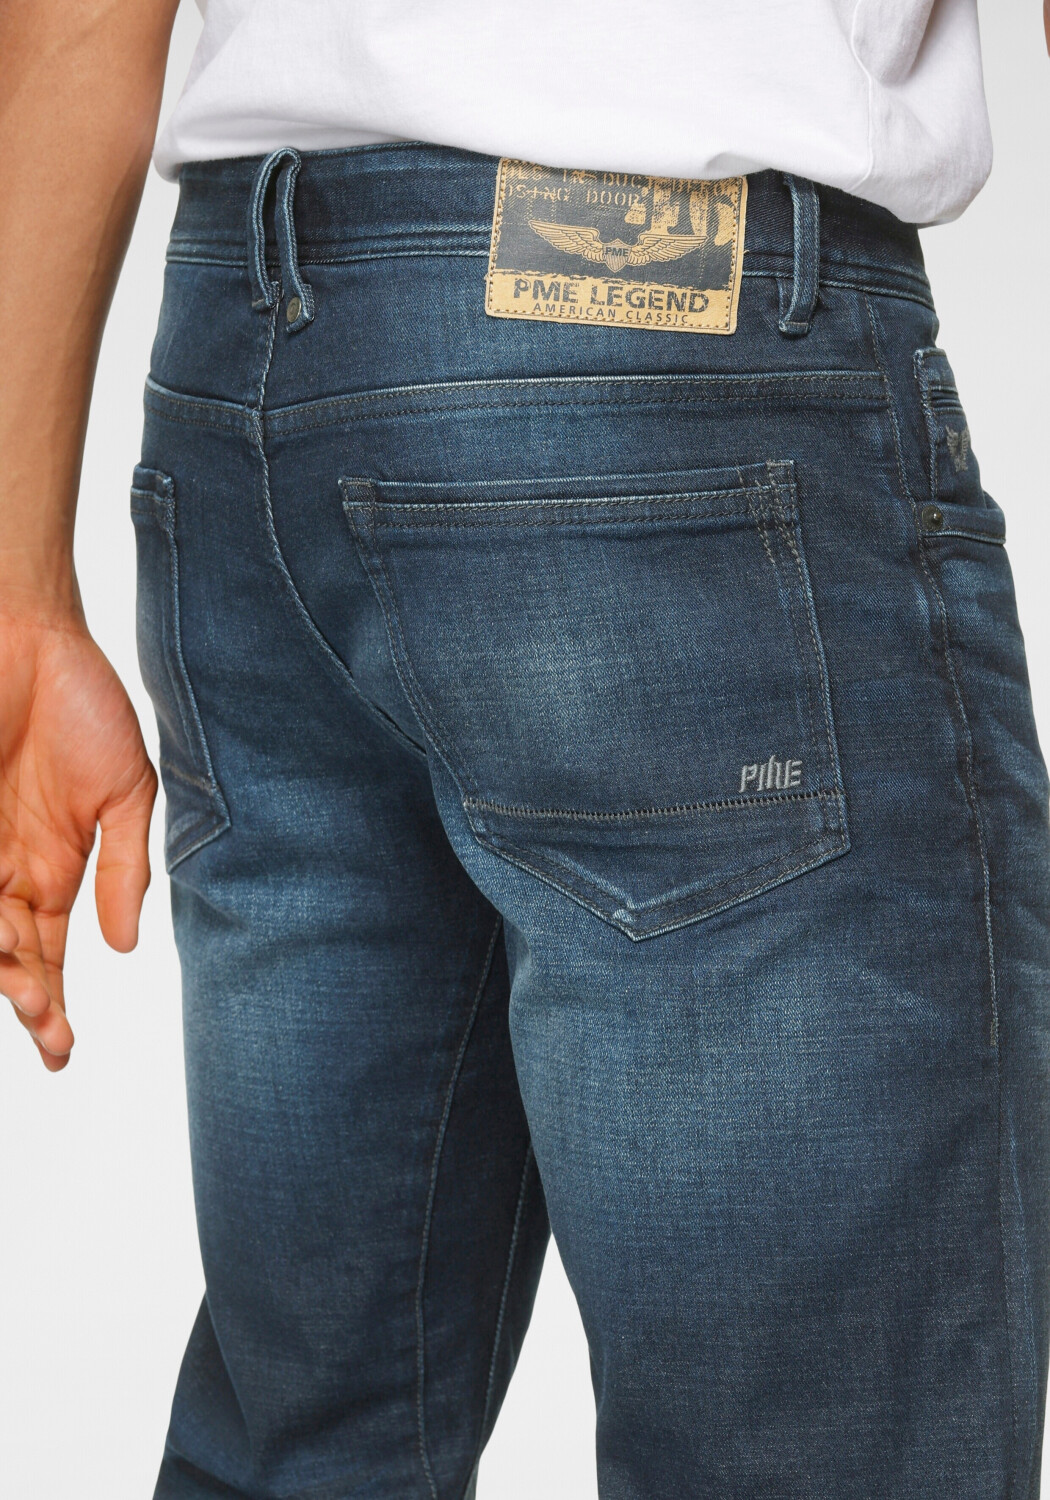 PME Legend Jeans Preisvergleich 49,99 ab dark Tailwheel wash bei | Fit Slim €